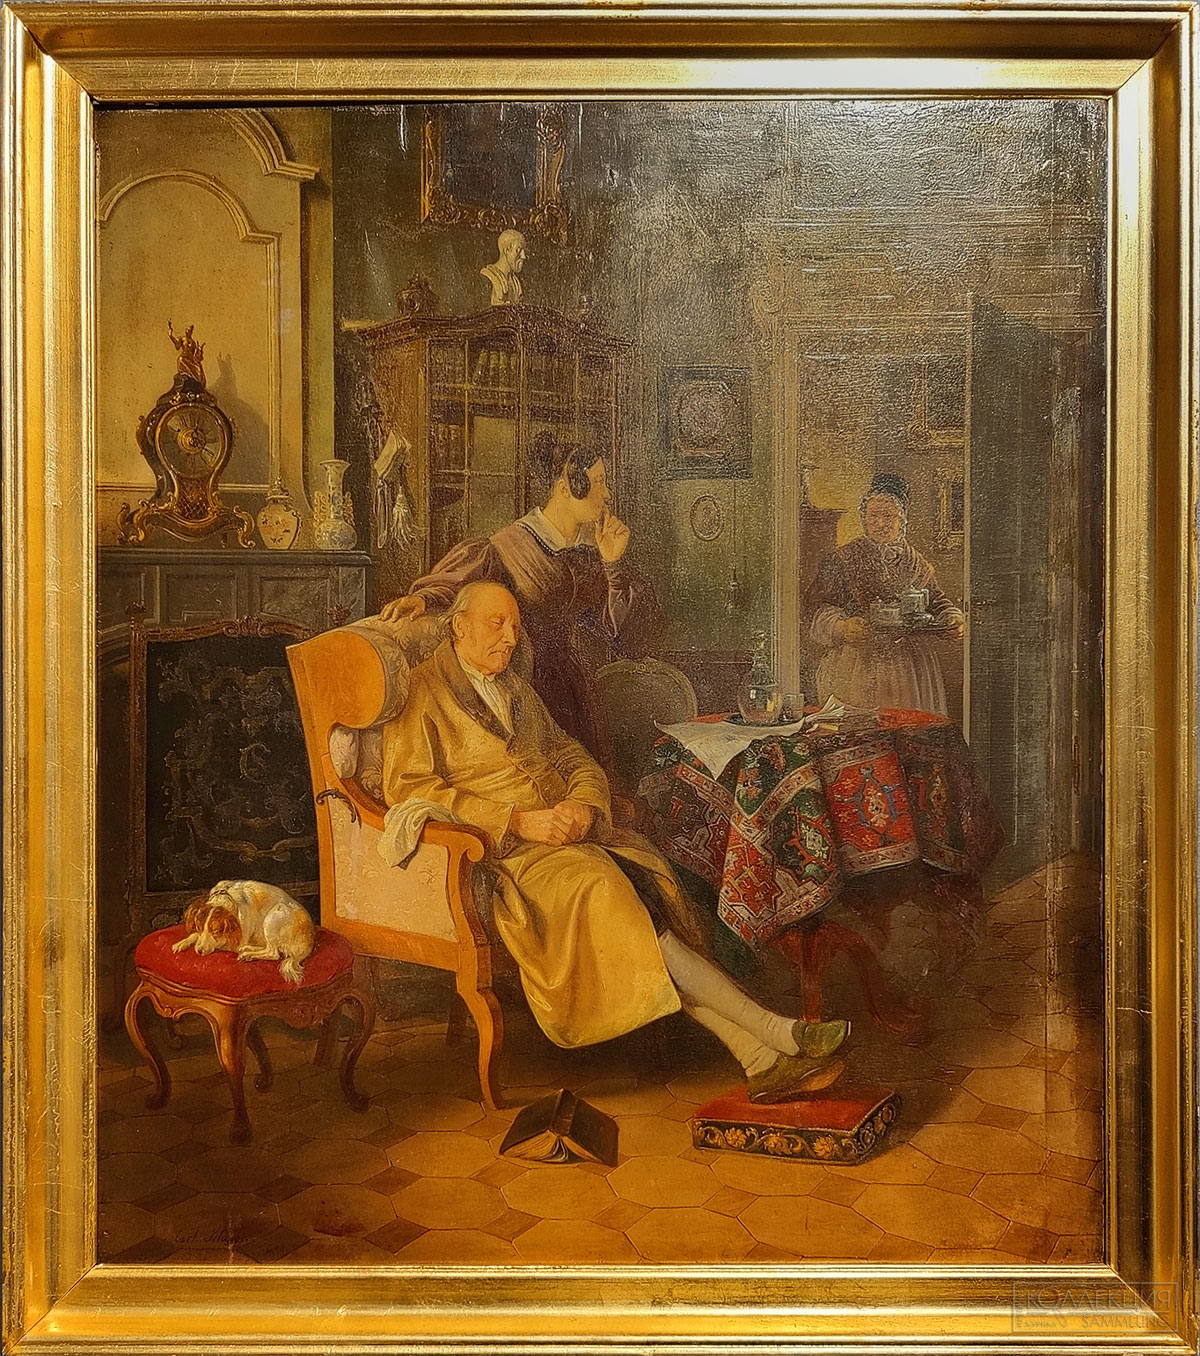 Шульц Карл Фридрих. 1796-1866. Домашняя сцена. 1830-1840-е. Из собрания Музея В.А. Тропинина